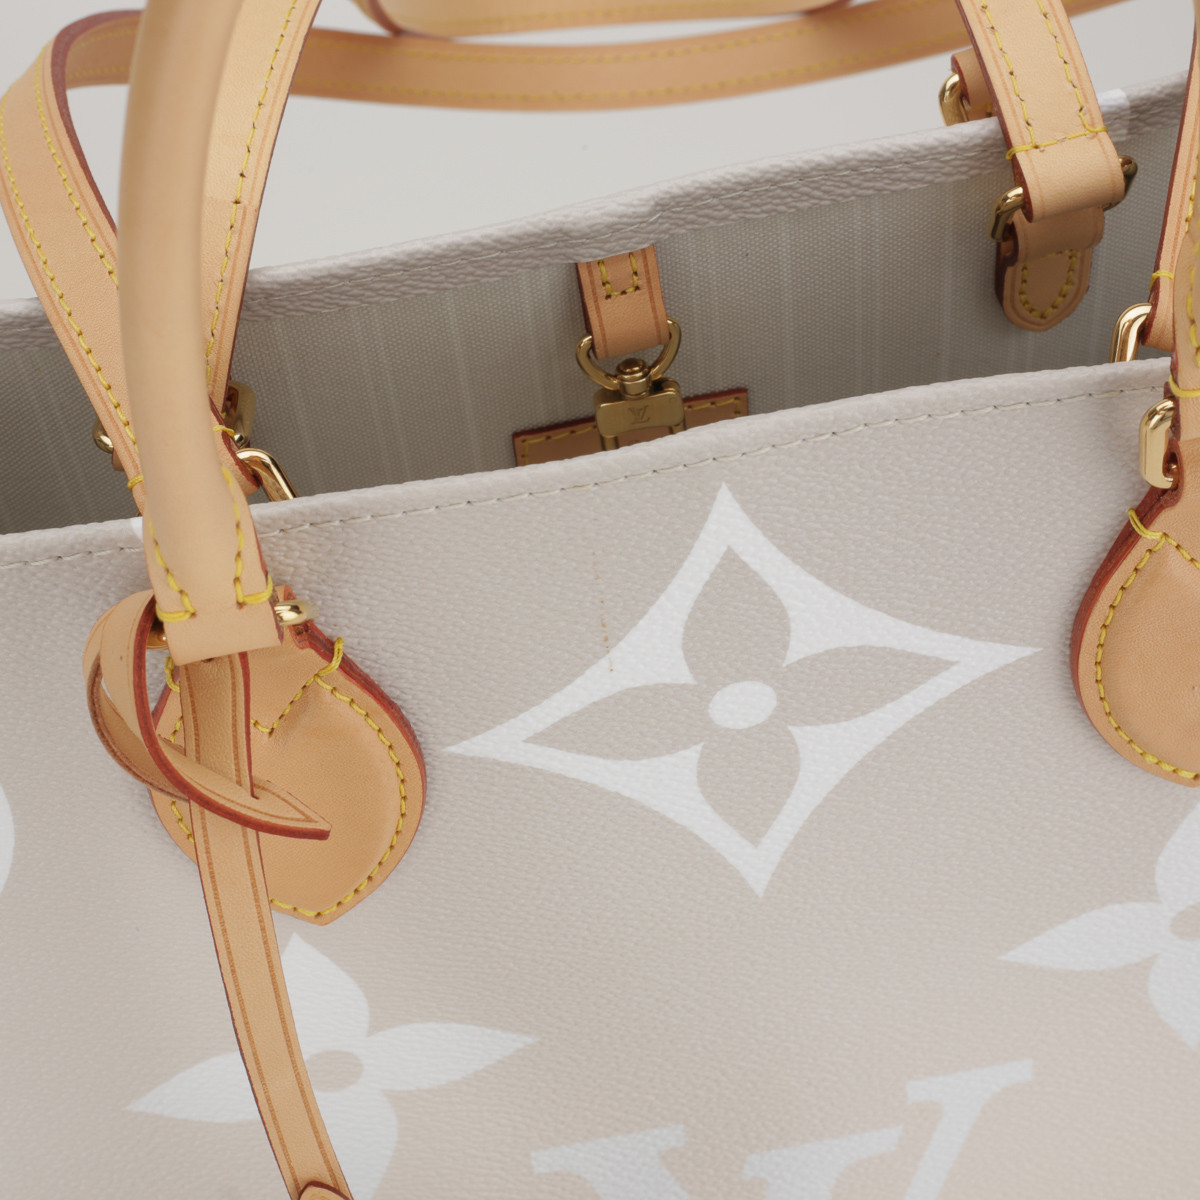 Beżowa torba z logo 'OnTheGo' Louis Vuitton - sklep Pyskaty Zamsz